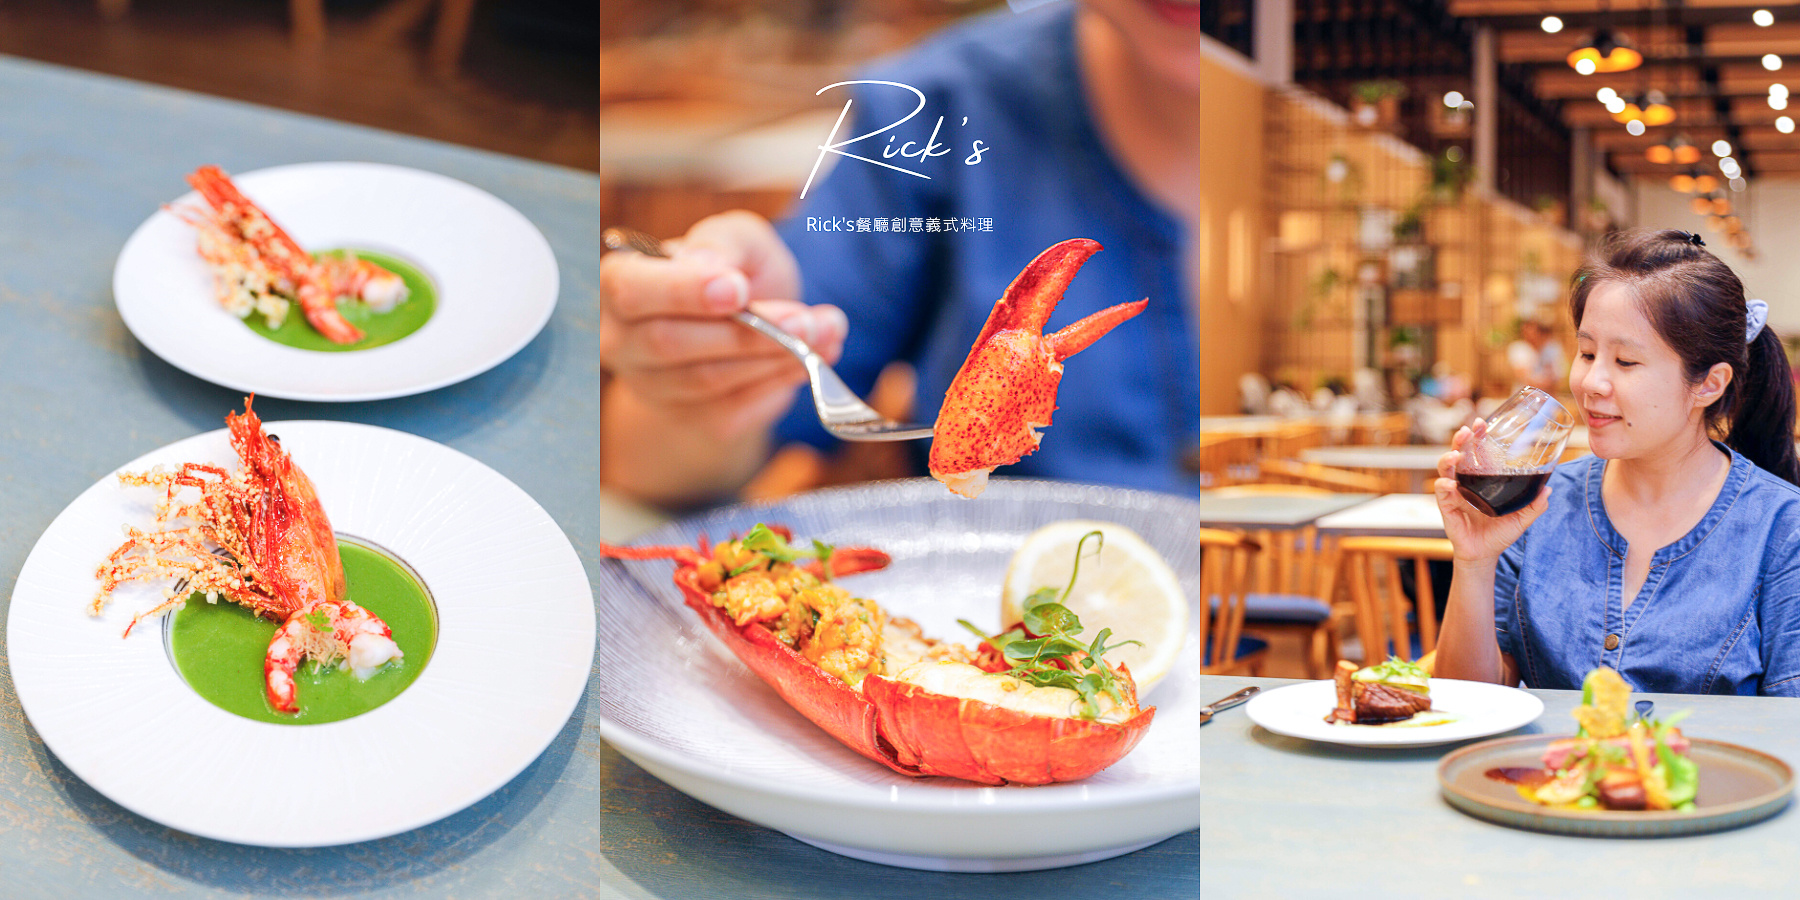 延伸閱讀：宜蘭礁溪品文旅Rick’s餐廳，輕奢義式創意料理套餐晚宴菜單價格評價